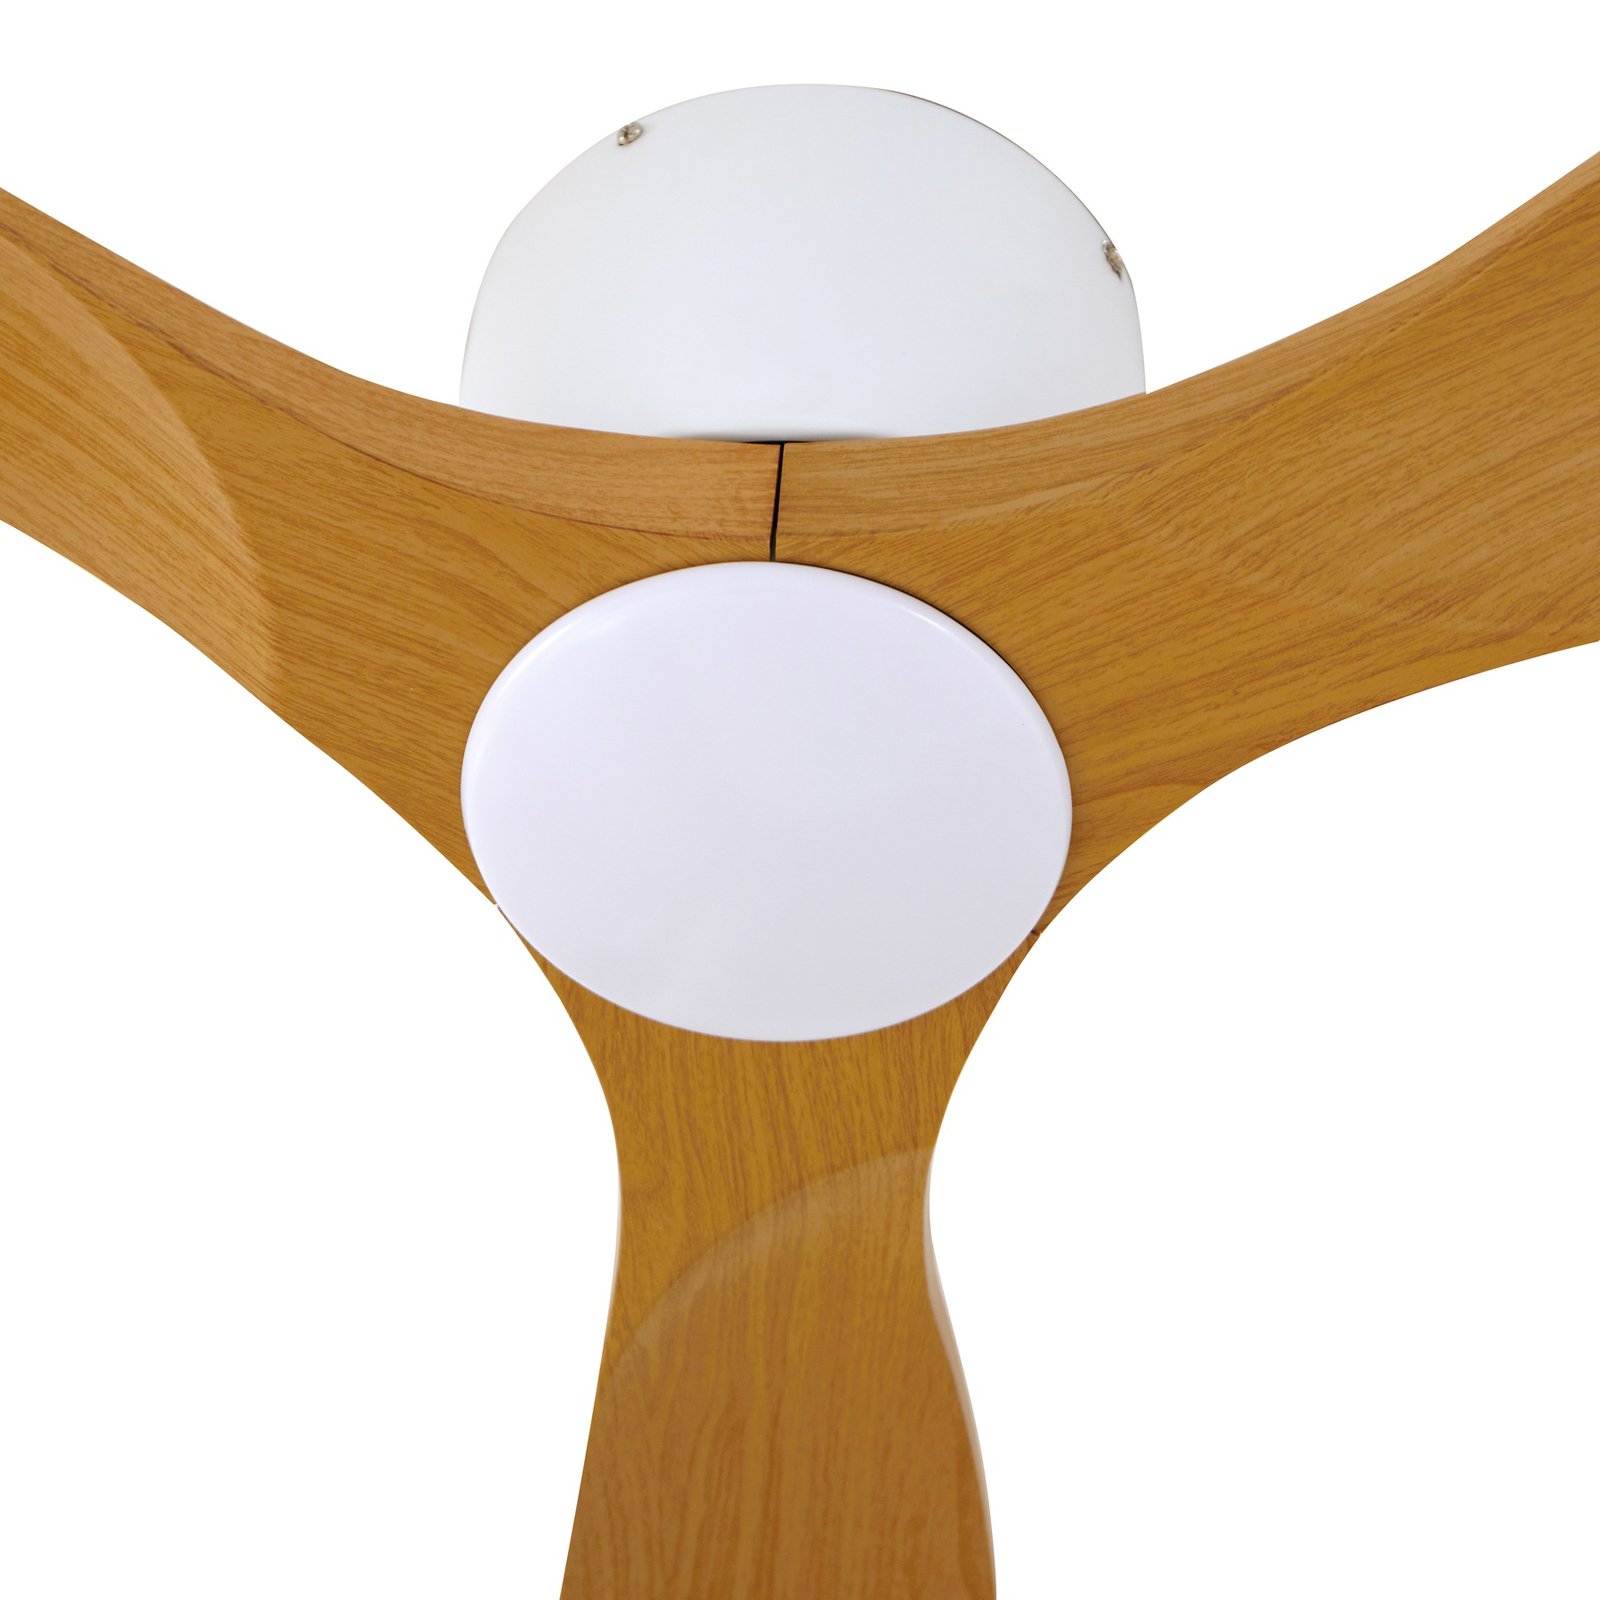 Lucande LED mennyezeti ventilátor Moneno fehér/fa színű DC csendes